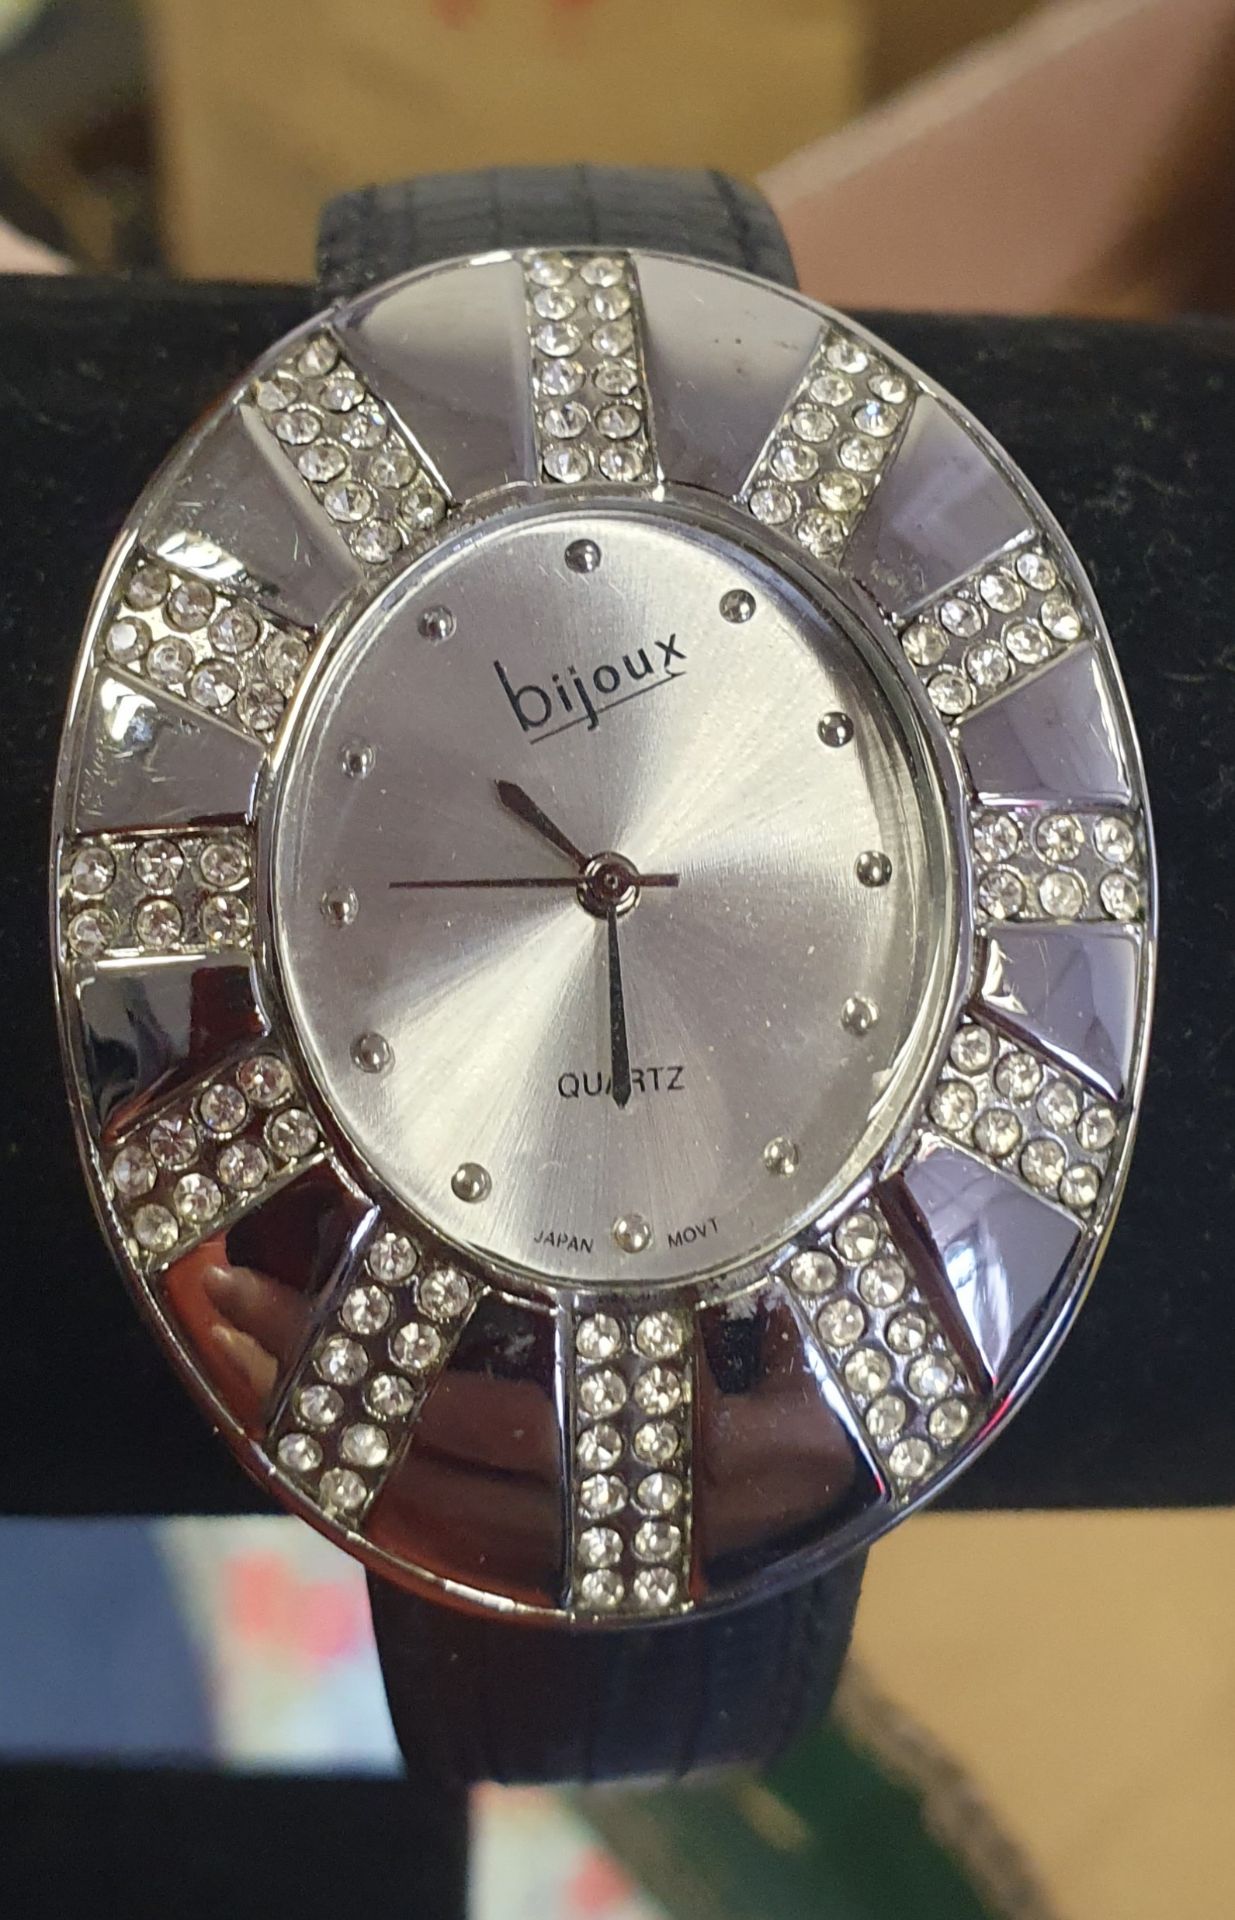 Bijoux quartz watch